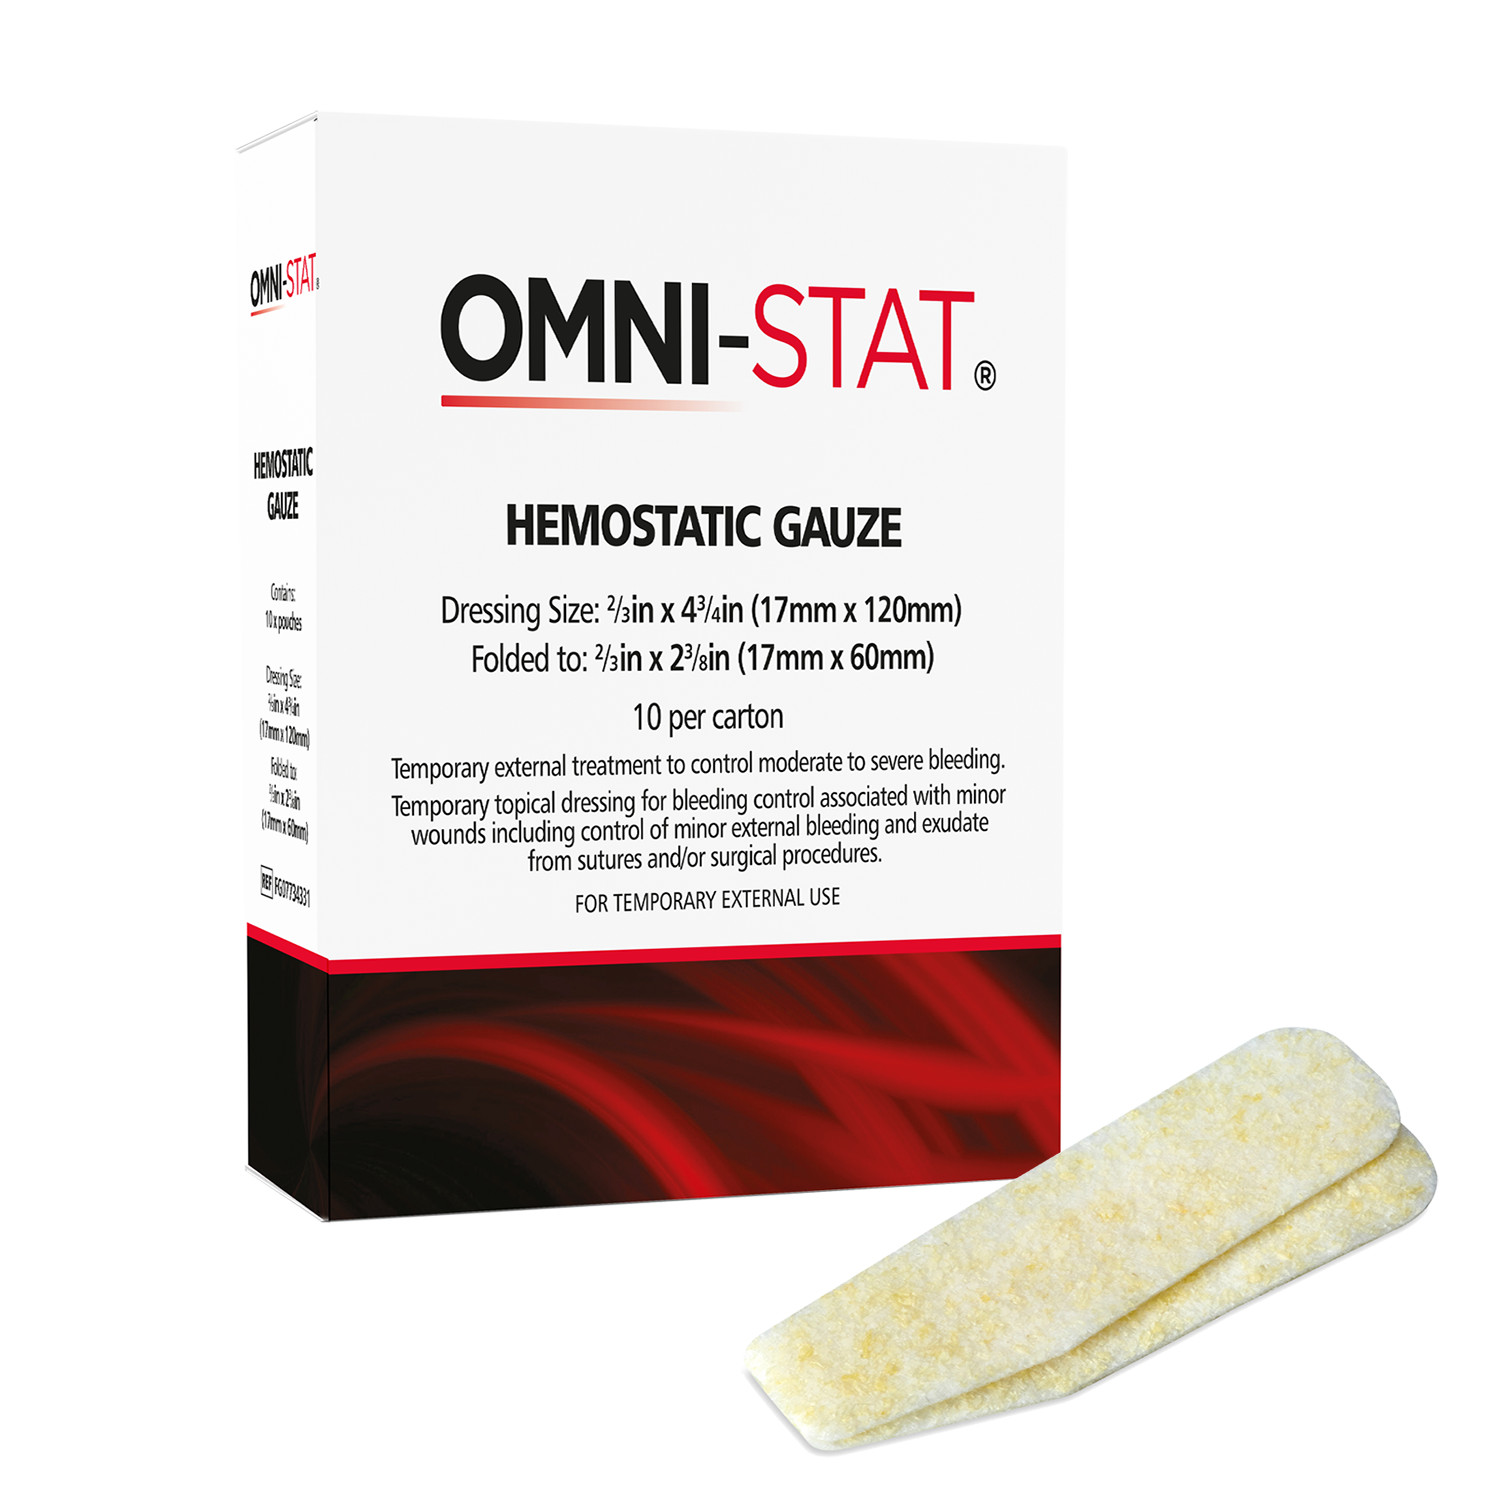 OMNI-STAT 2/3in x 4¾in Hemostatic Gauze strips